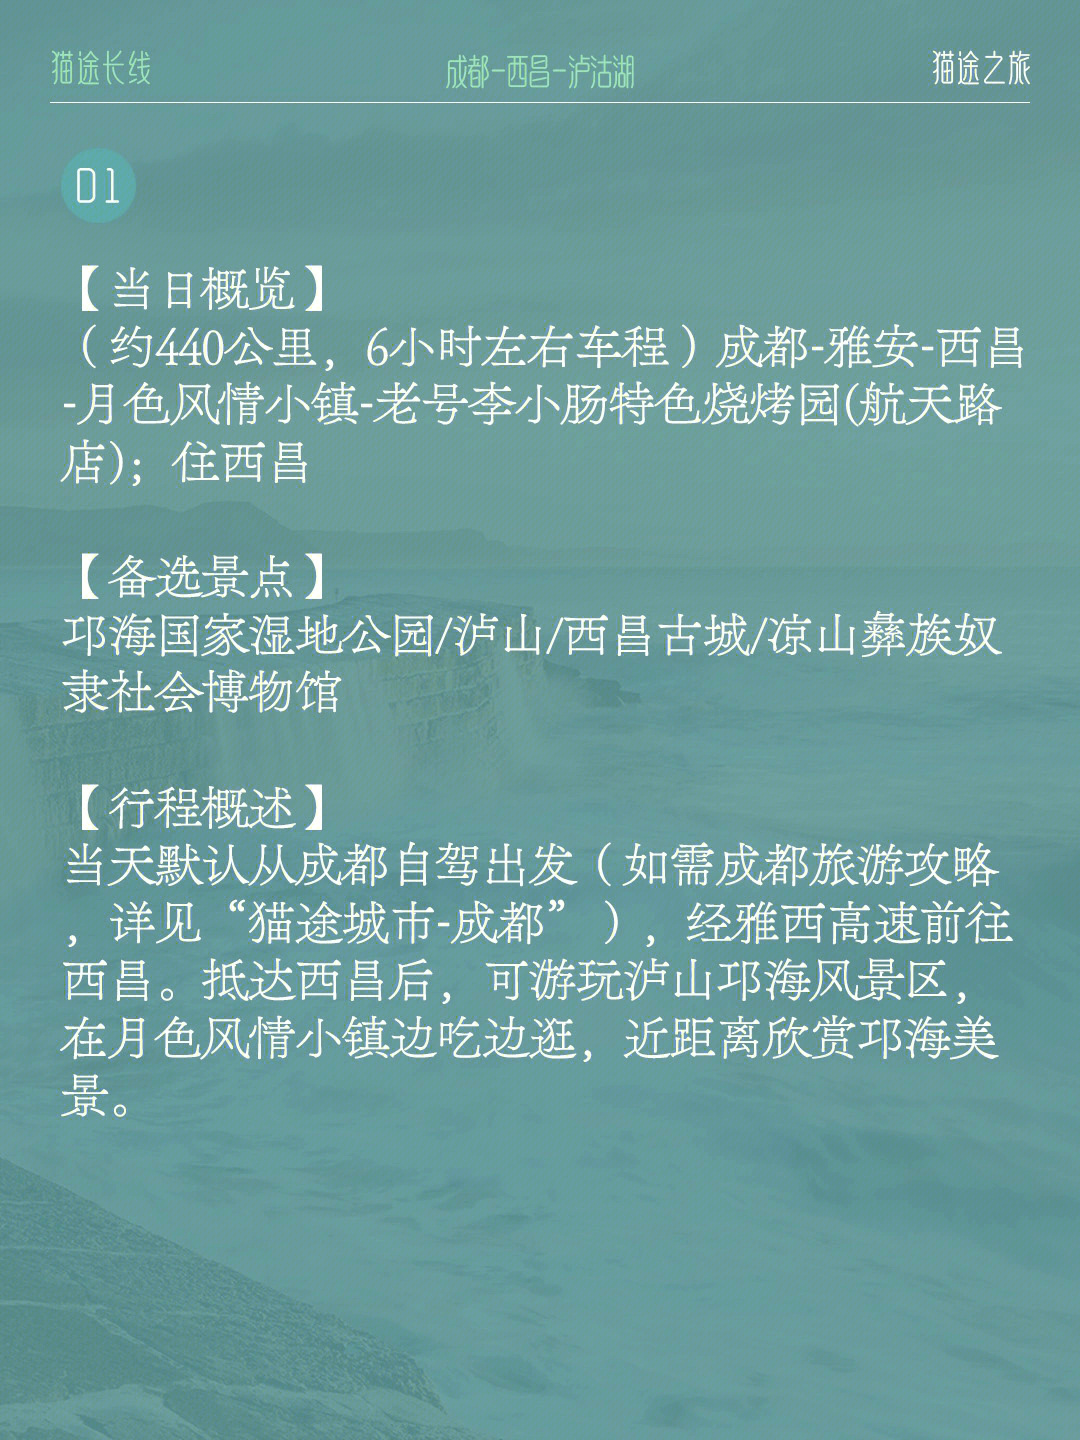 【目的地概览】成都~西昌~邛海~泸沽湖欢迎来到猫途的旅游攻略路书